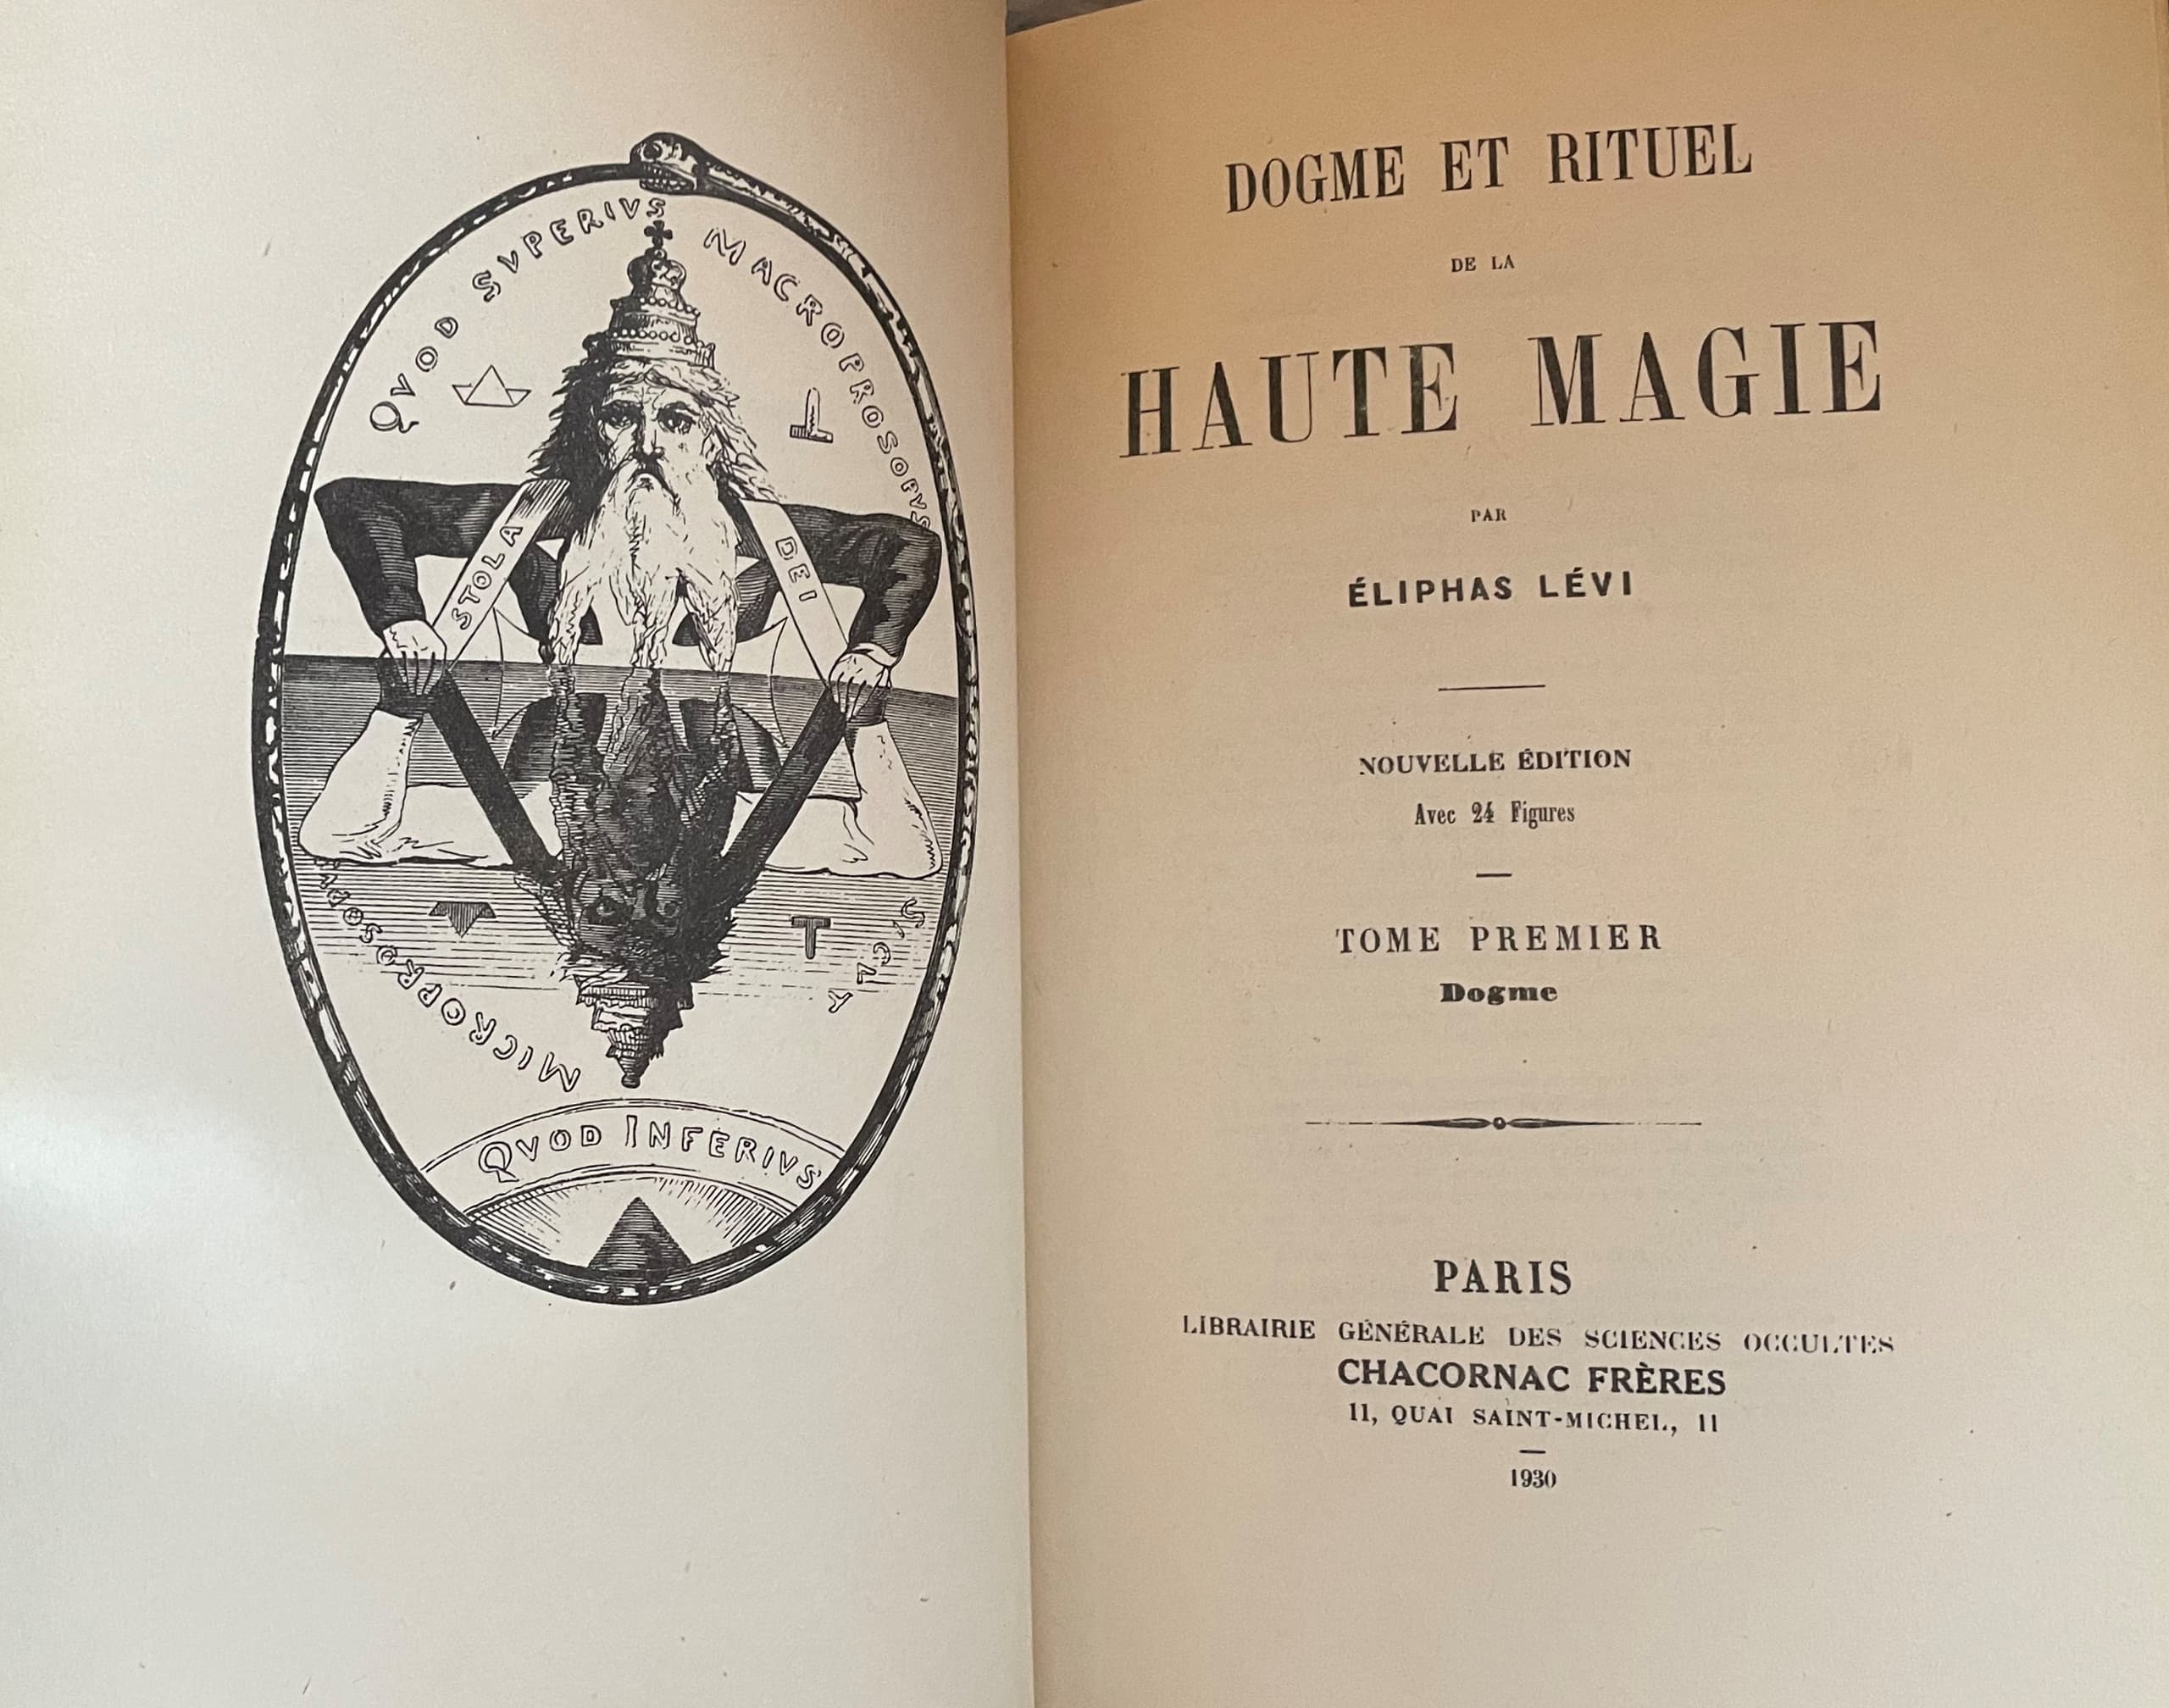 Le grand livre de la magie (French Edition) [ Big Book of Magic ]